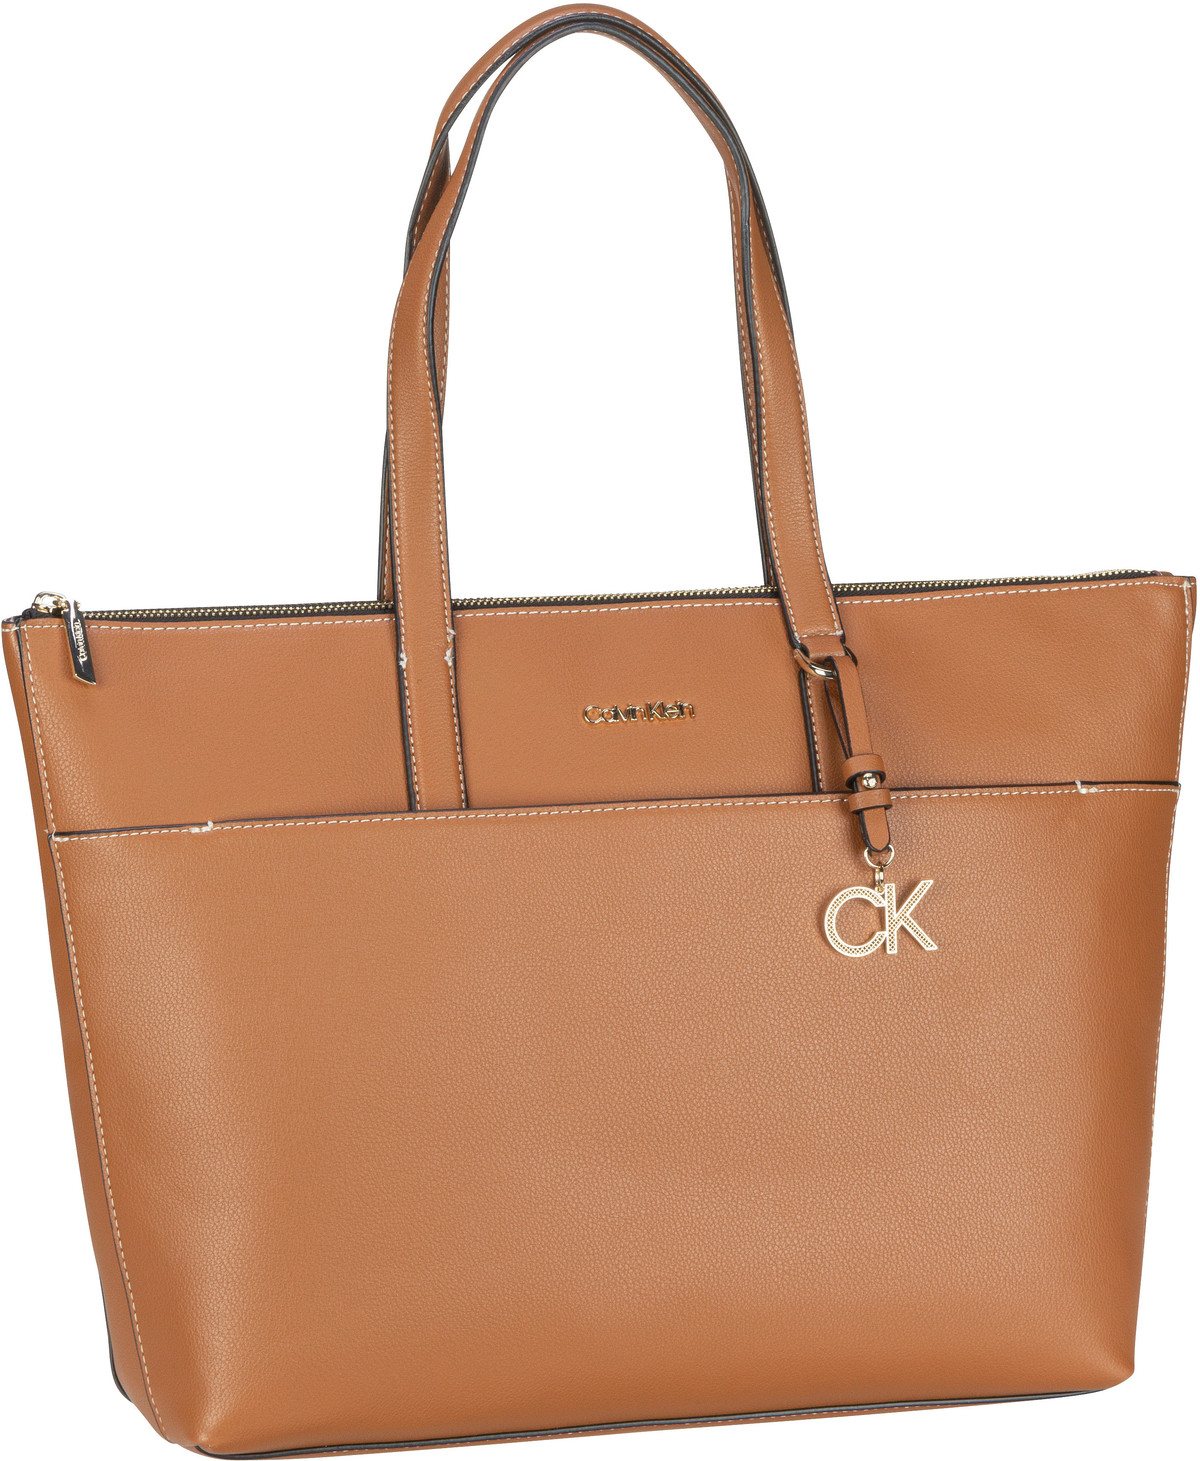 Calvin Klein CK Must Shopper LG SP22 - Cognac